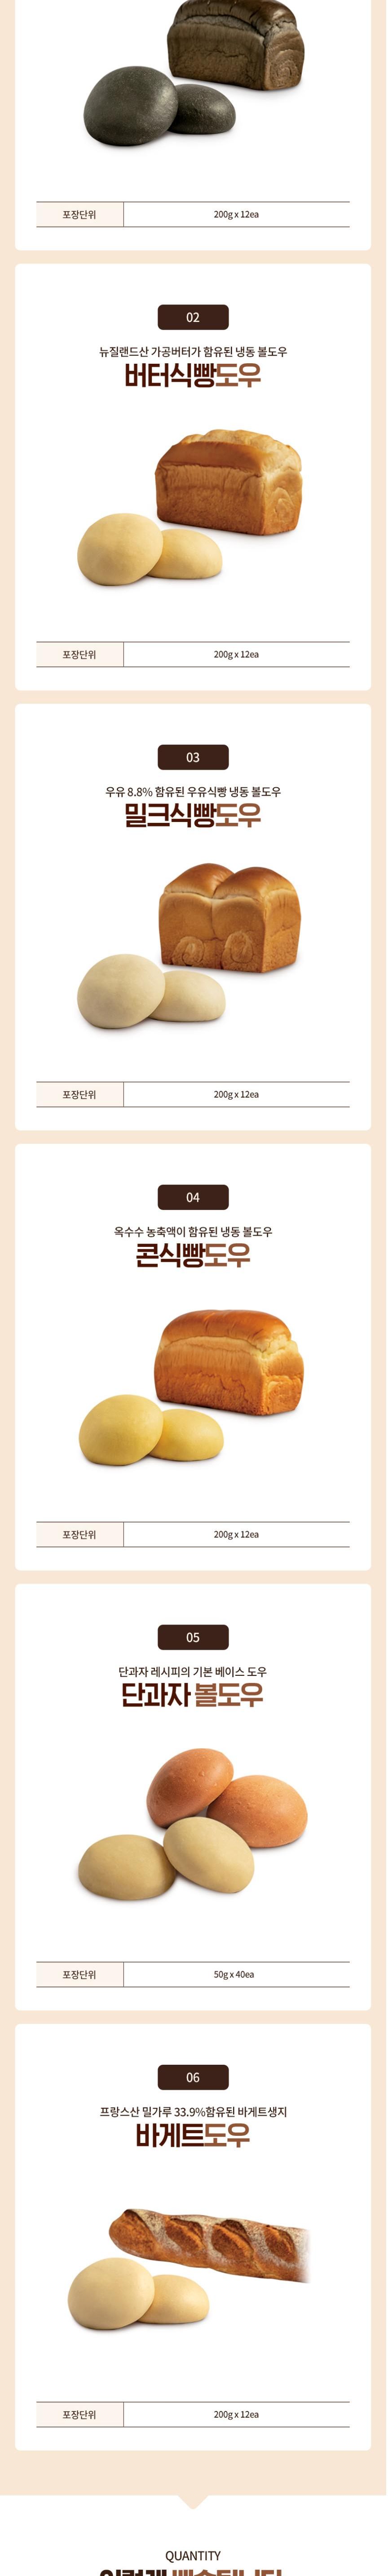 단과자볼도우 8kg(50g x 40ea x 4pk) BOX X 3 빵 냉동빵 생지빵 디저트빵 후식빵 베이커리 맛있는빵 냉동간식 간식 간식빵 냉동도우 냉동베이커리